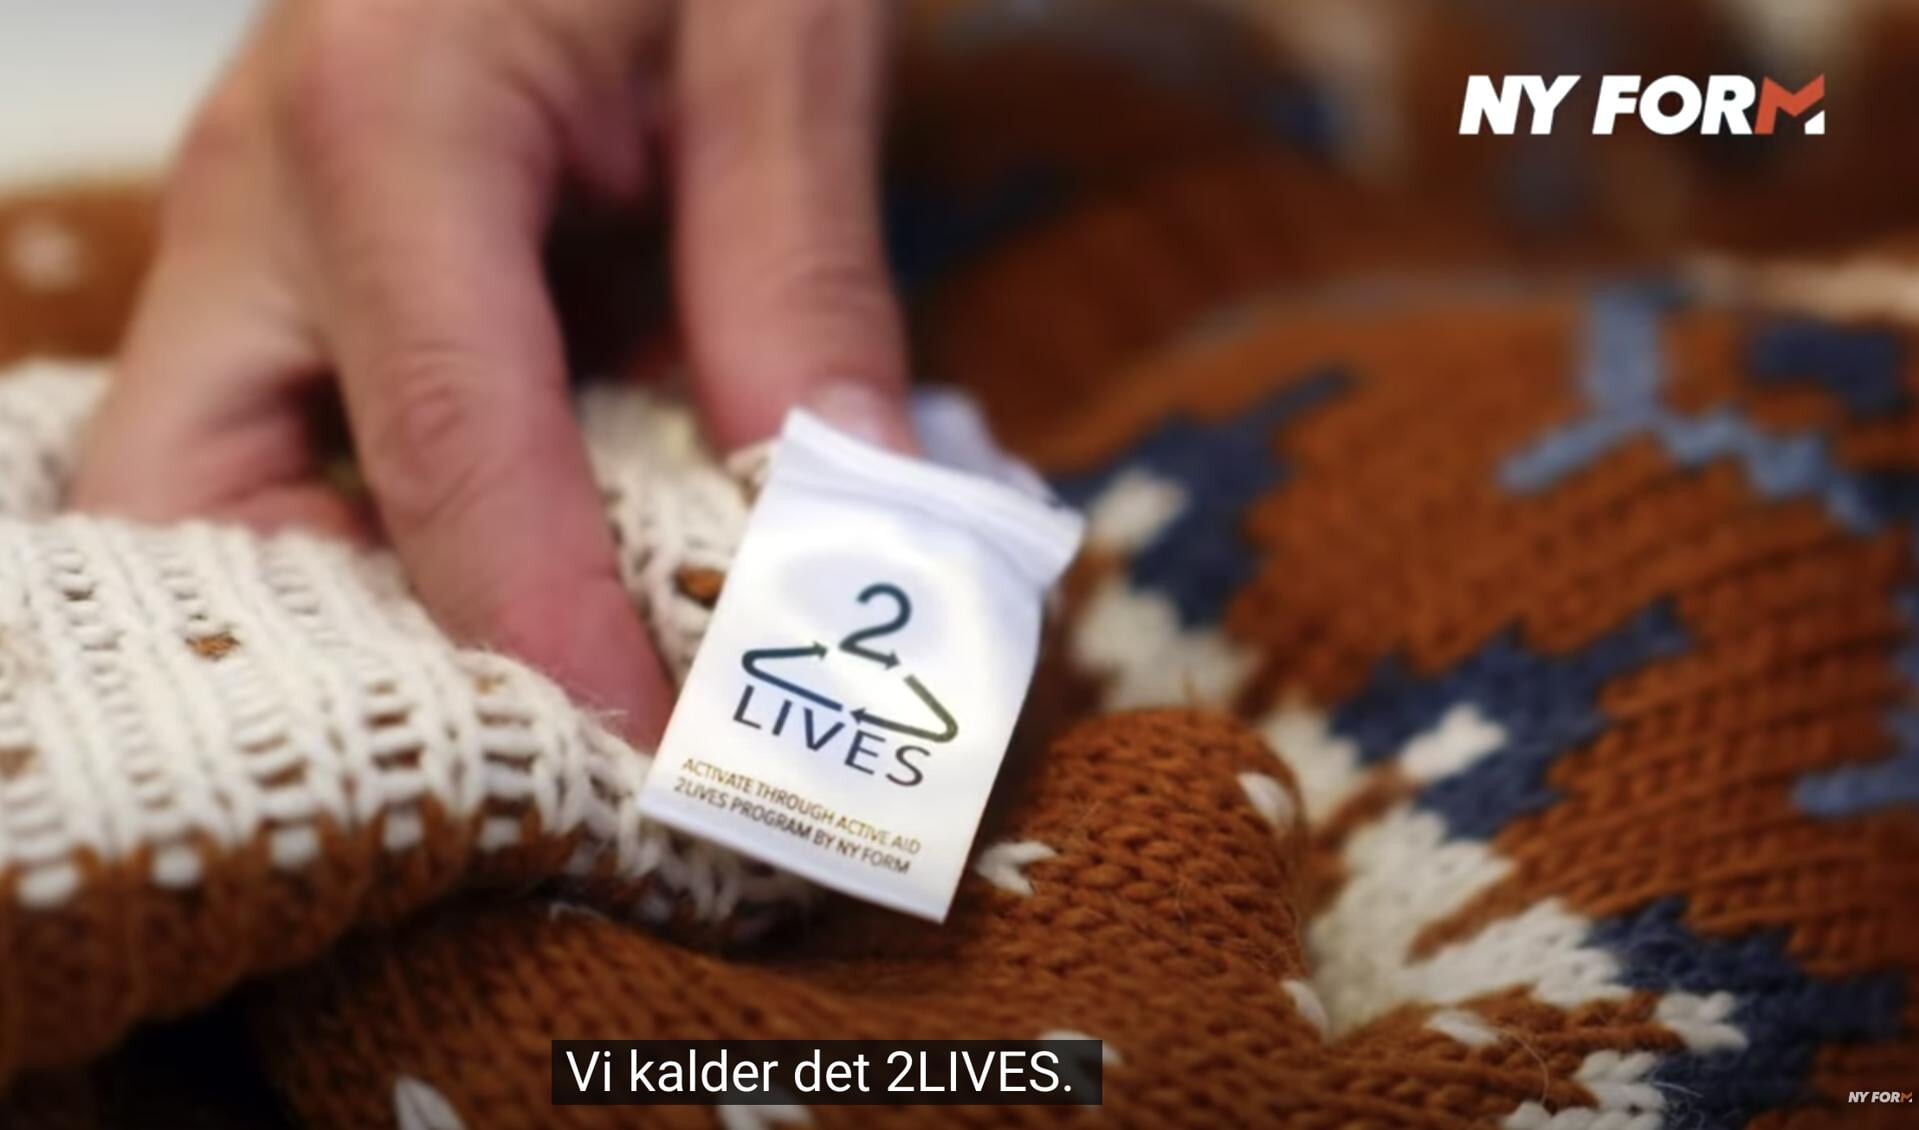 Bæredygtigt: Få penge for tøj - nyheder & baggrundstof fra Sydslesvig & grænselandet FLA